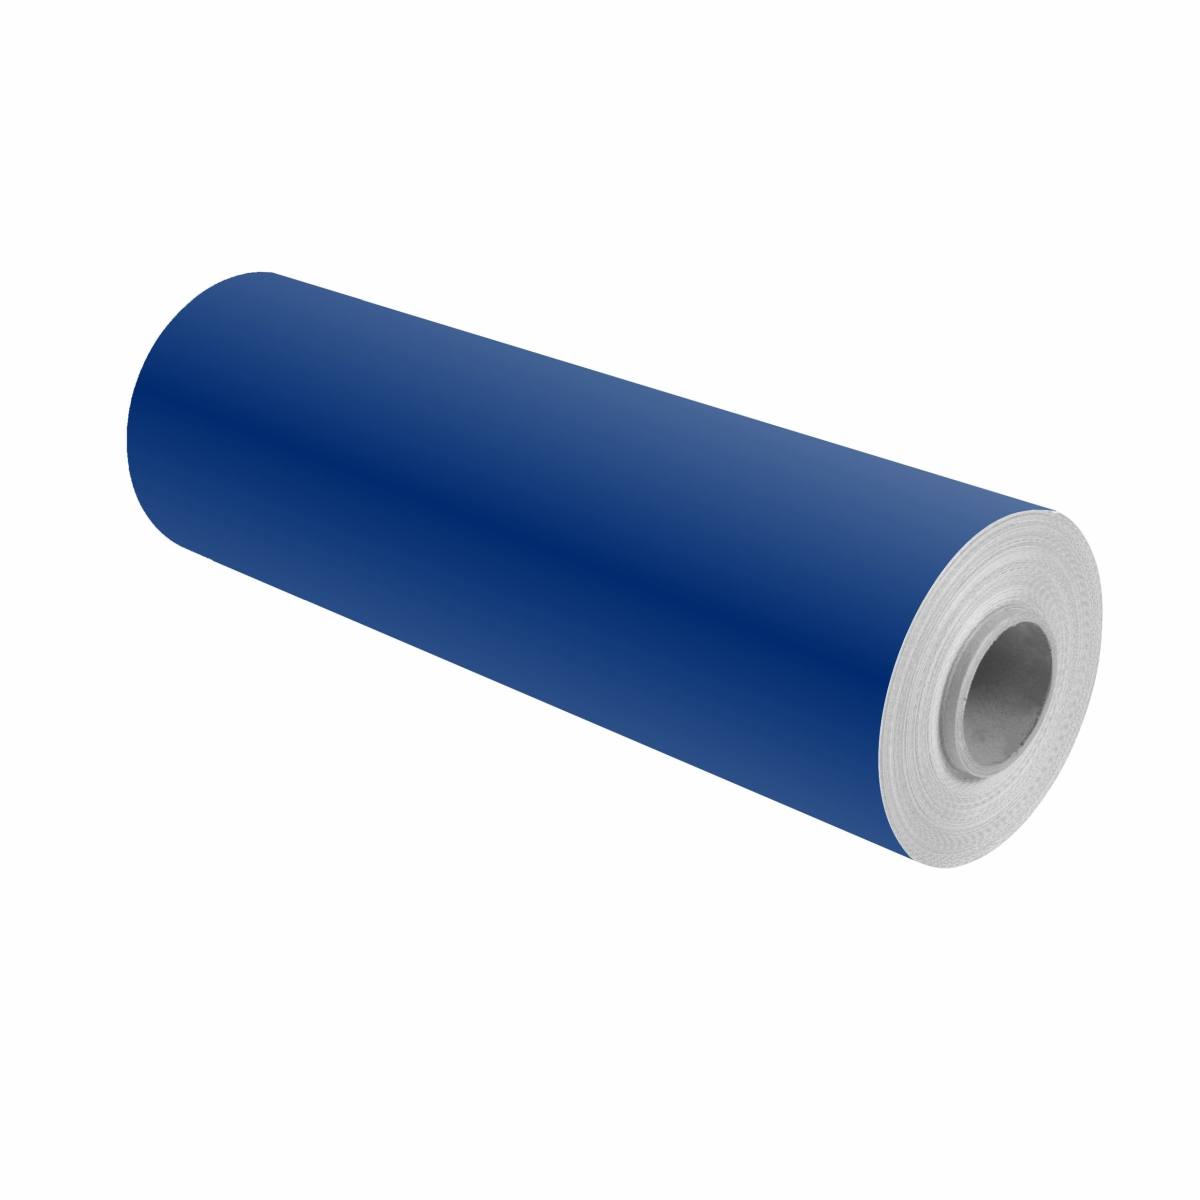 3M Scotchcal colour film 100-37 ultramarine blue 1.22m x 25m